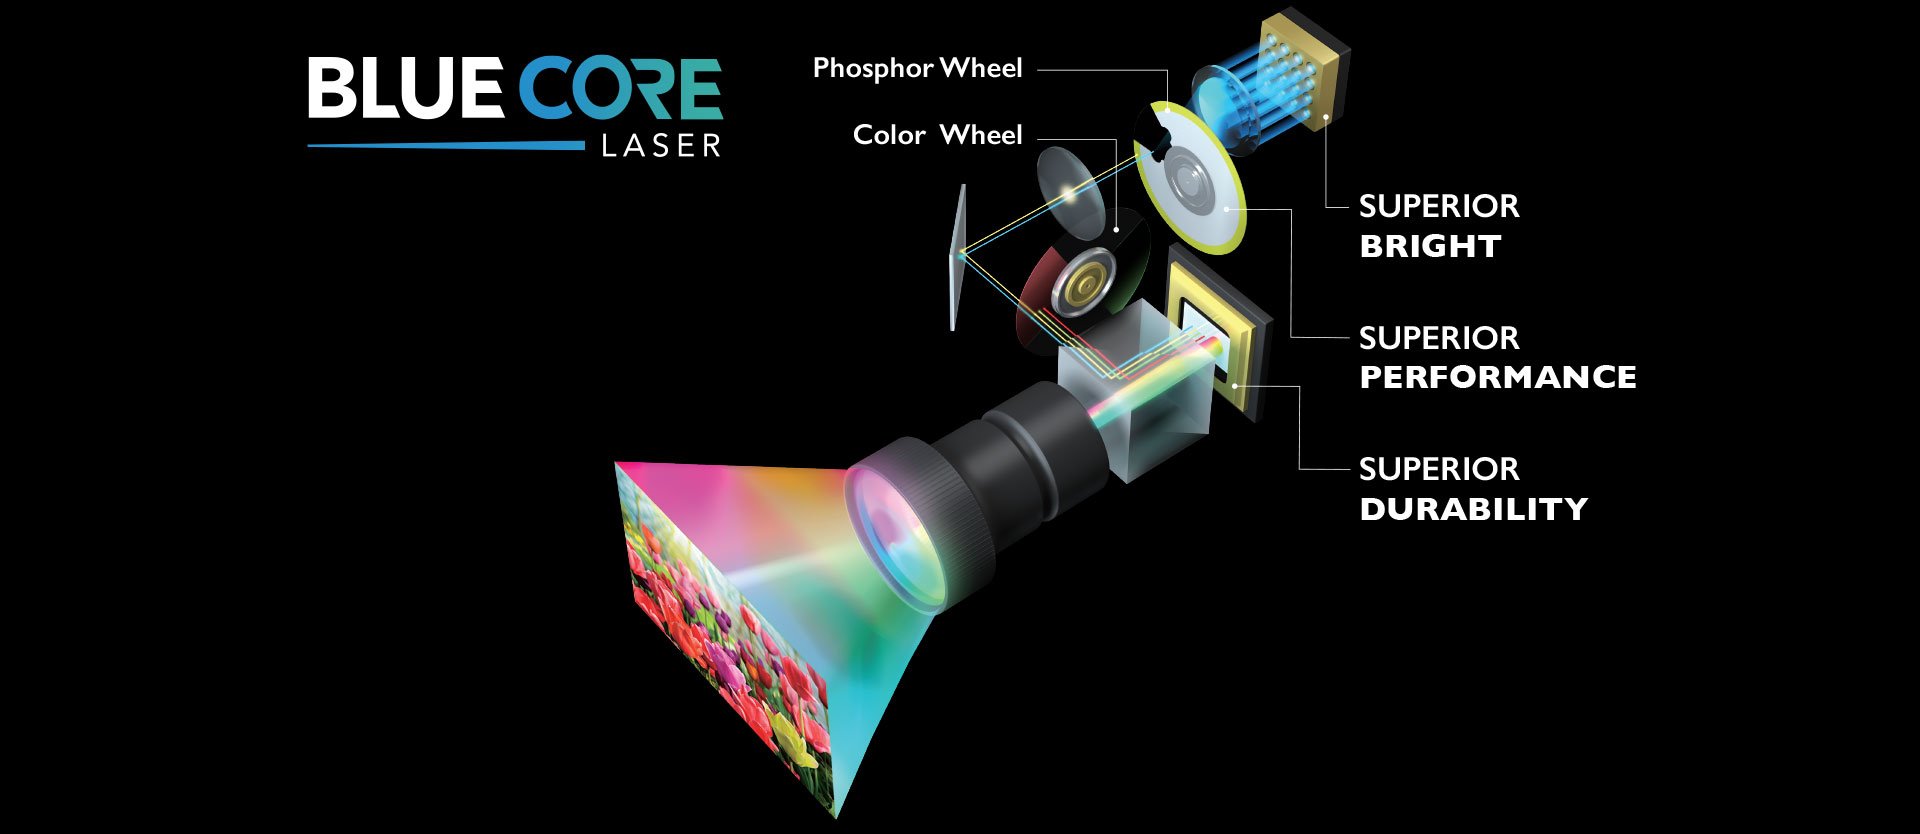 Proyektor Laser BlueCore Ruang Konferensi WUXGA LU930 BenQ memberi Anda kecerahan, performa, dan daya tahan superior.